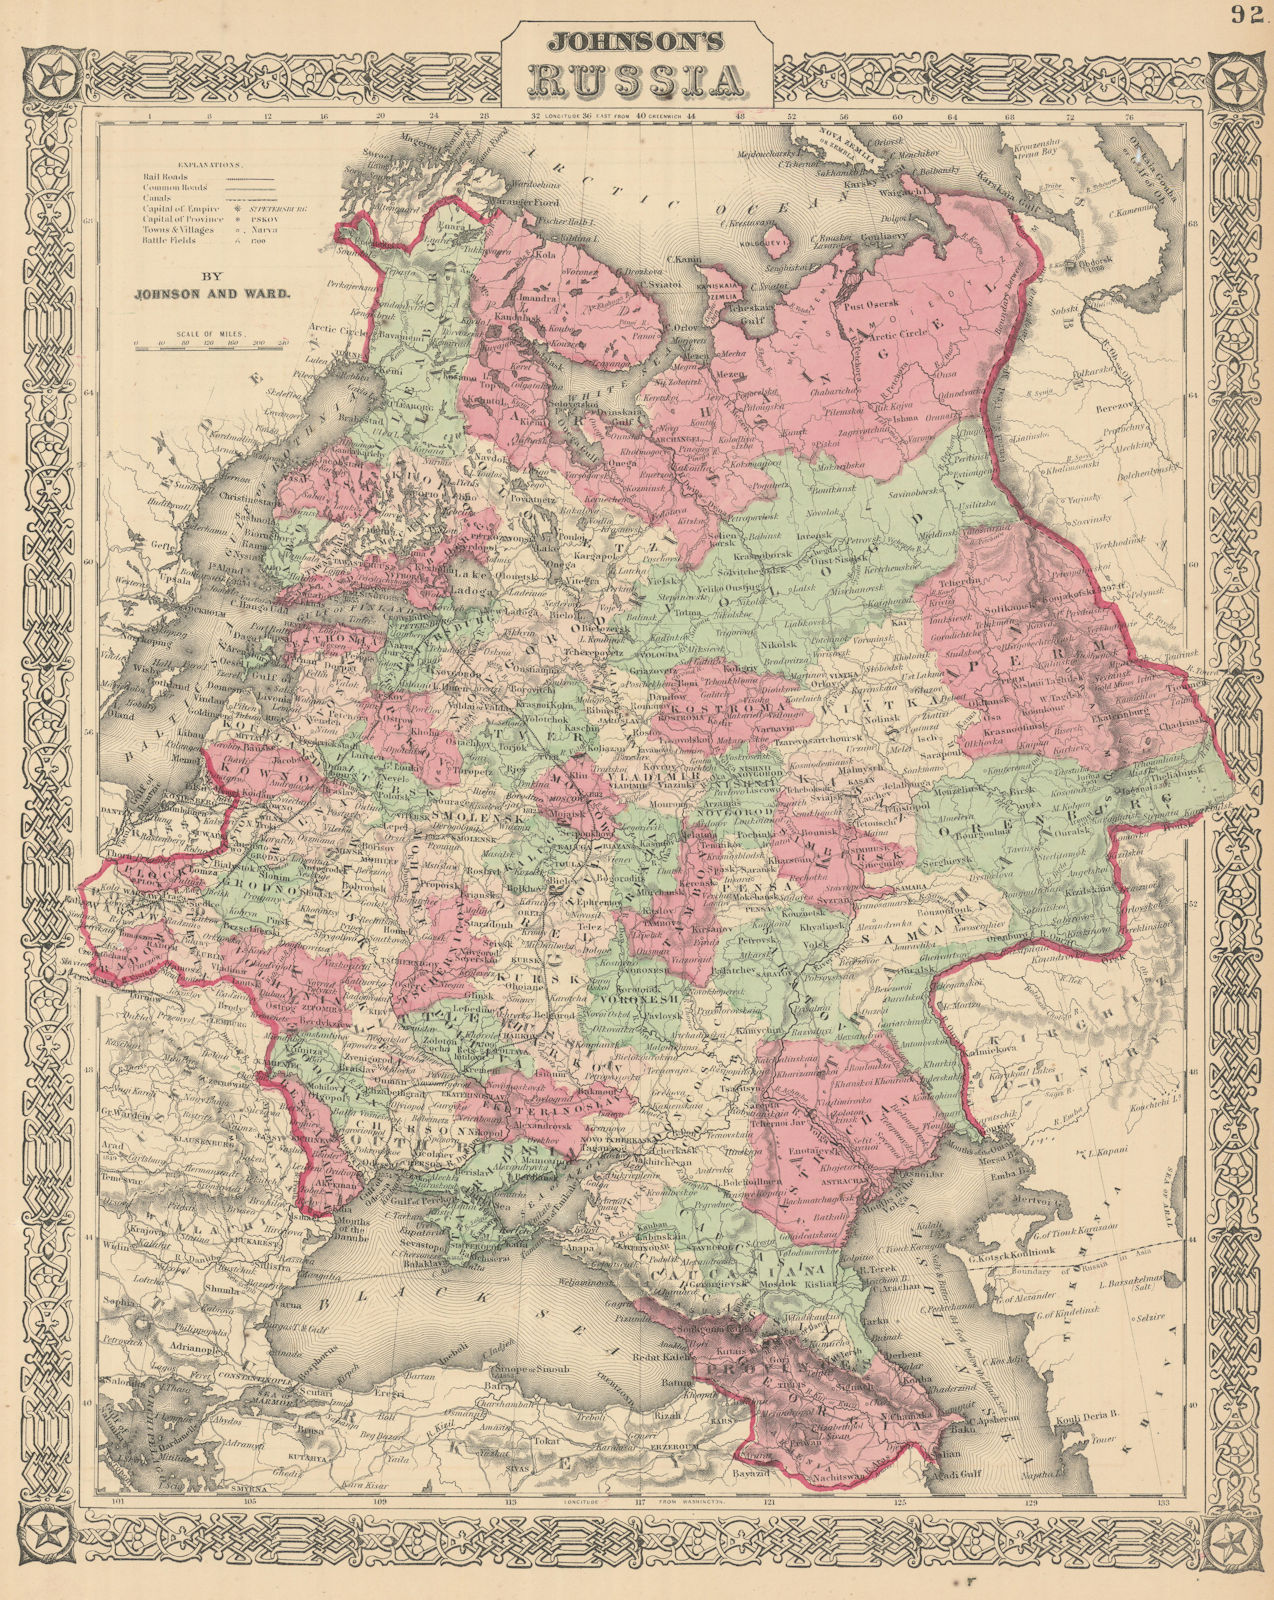 Associate Product Johnson's Russia in Europe. Ukraine Poland Baltics Finland Caucasus 1866 map